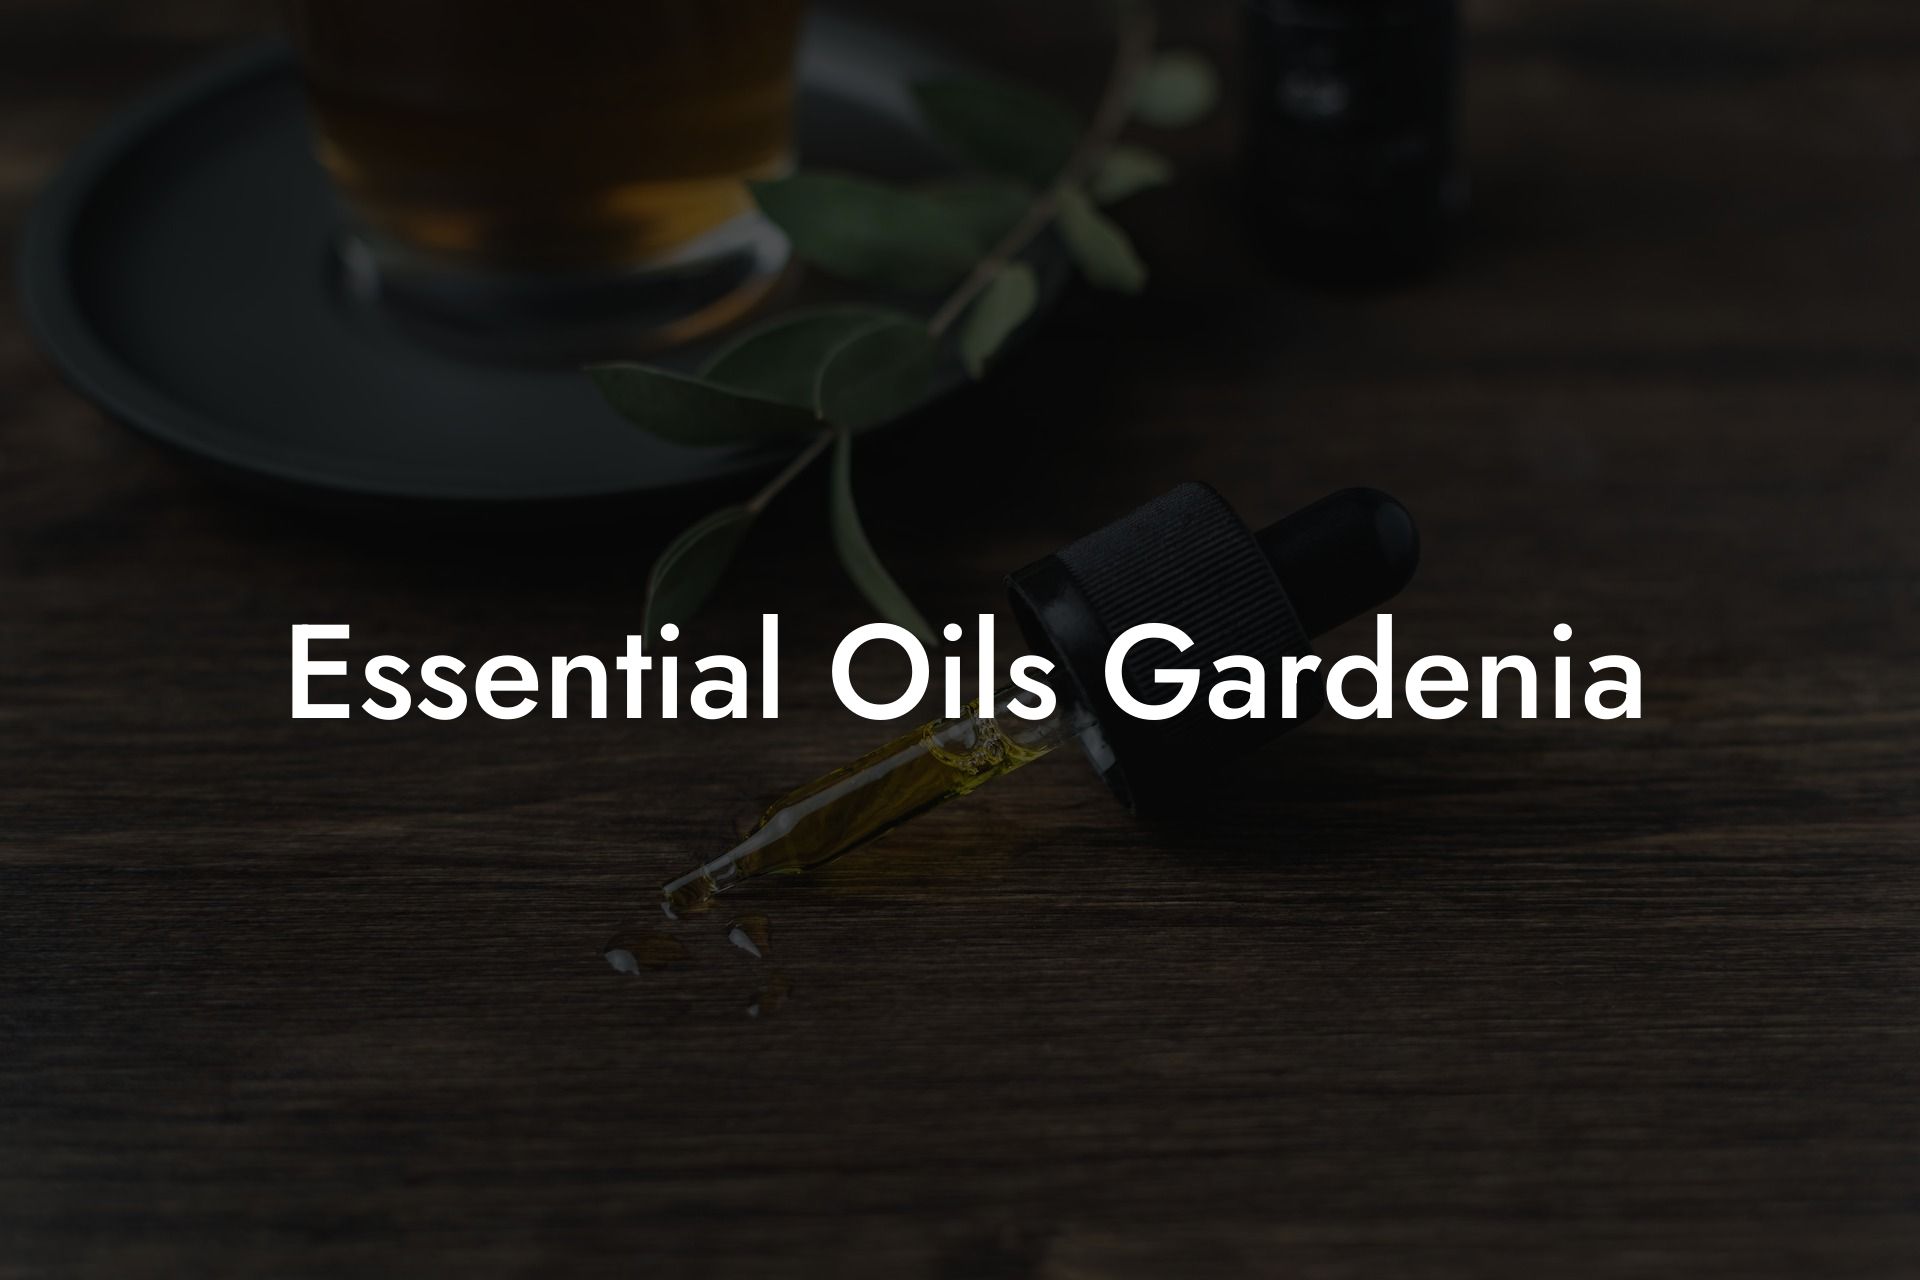 Essential Oils Gardenia